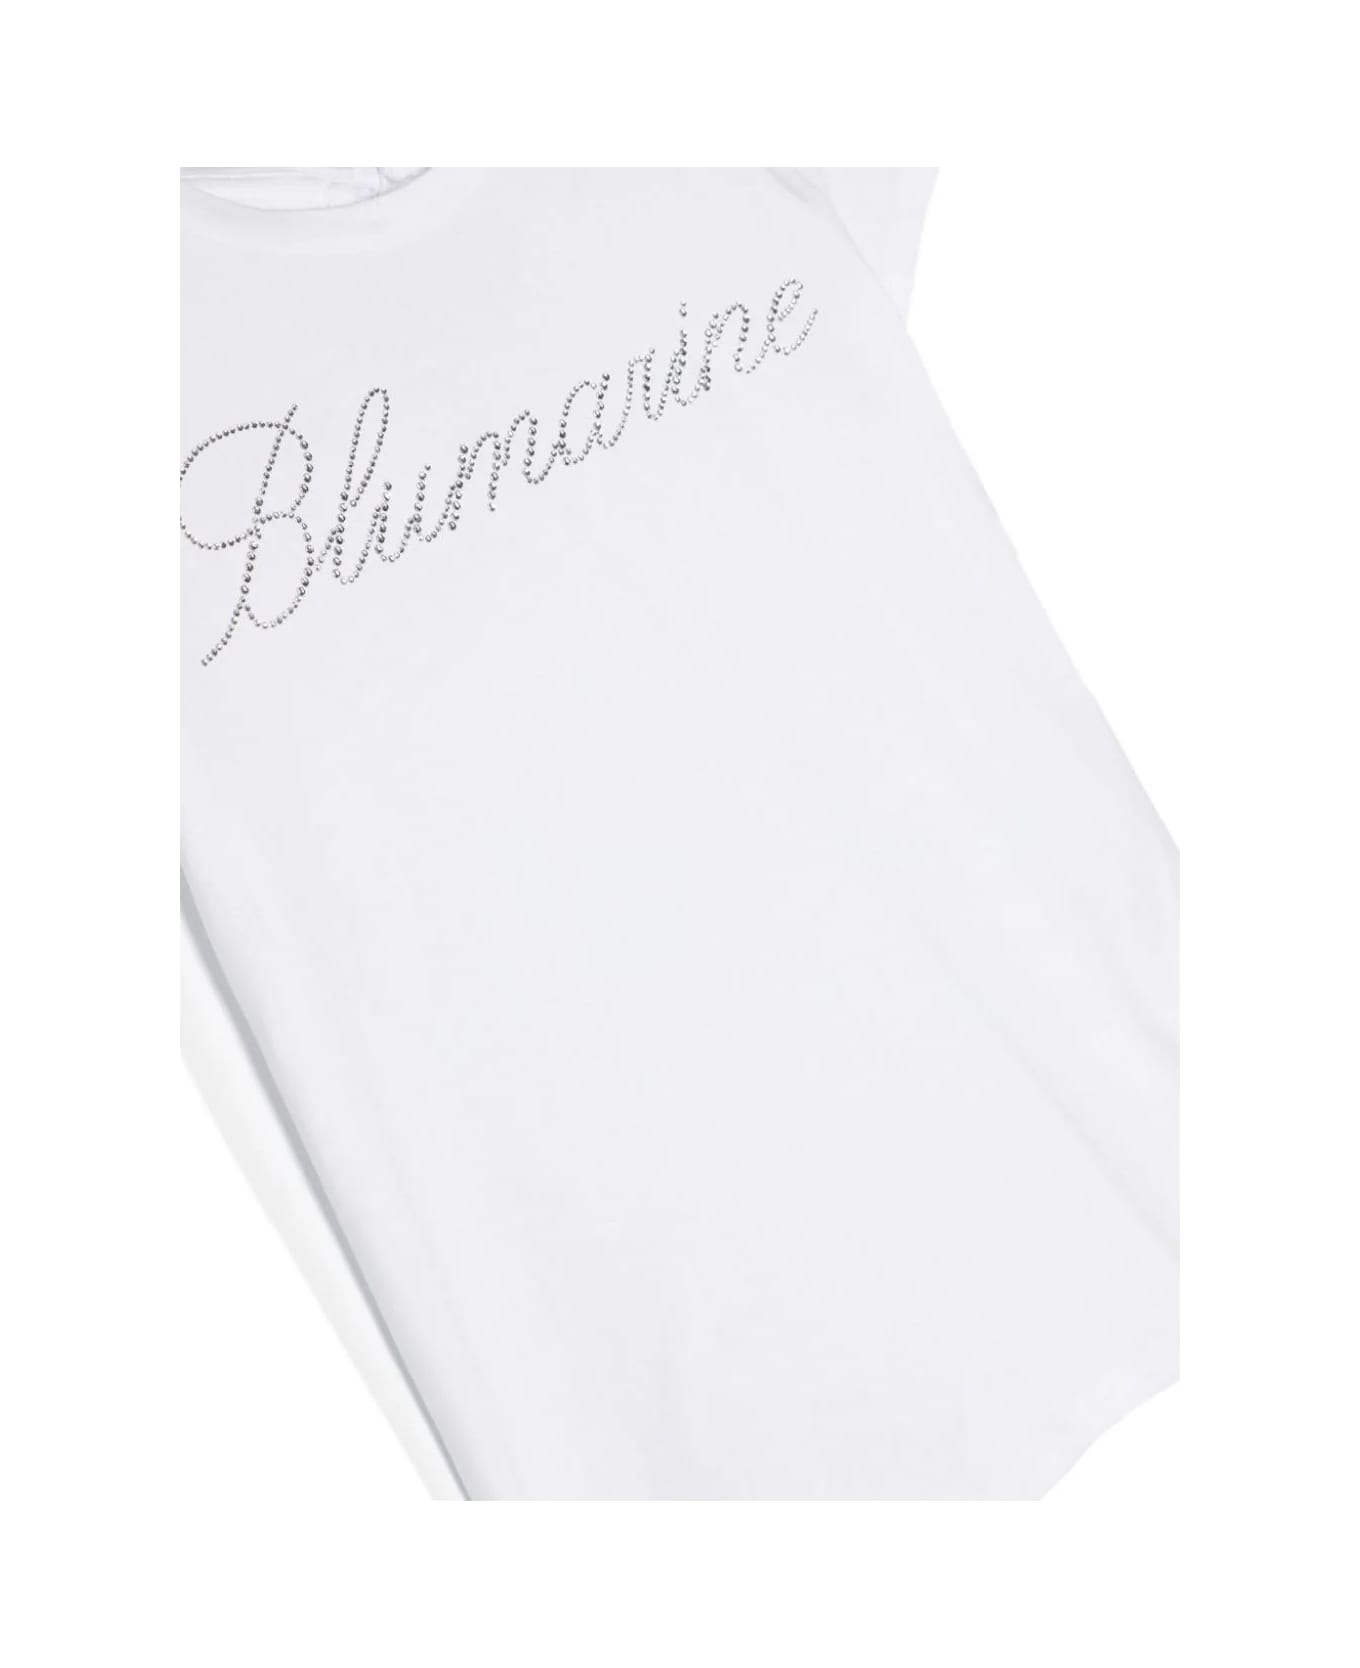 Miss Blumarine White T-shirt With Rhinestone Logo And Ruffle Detail - White